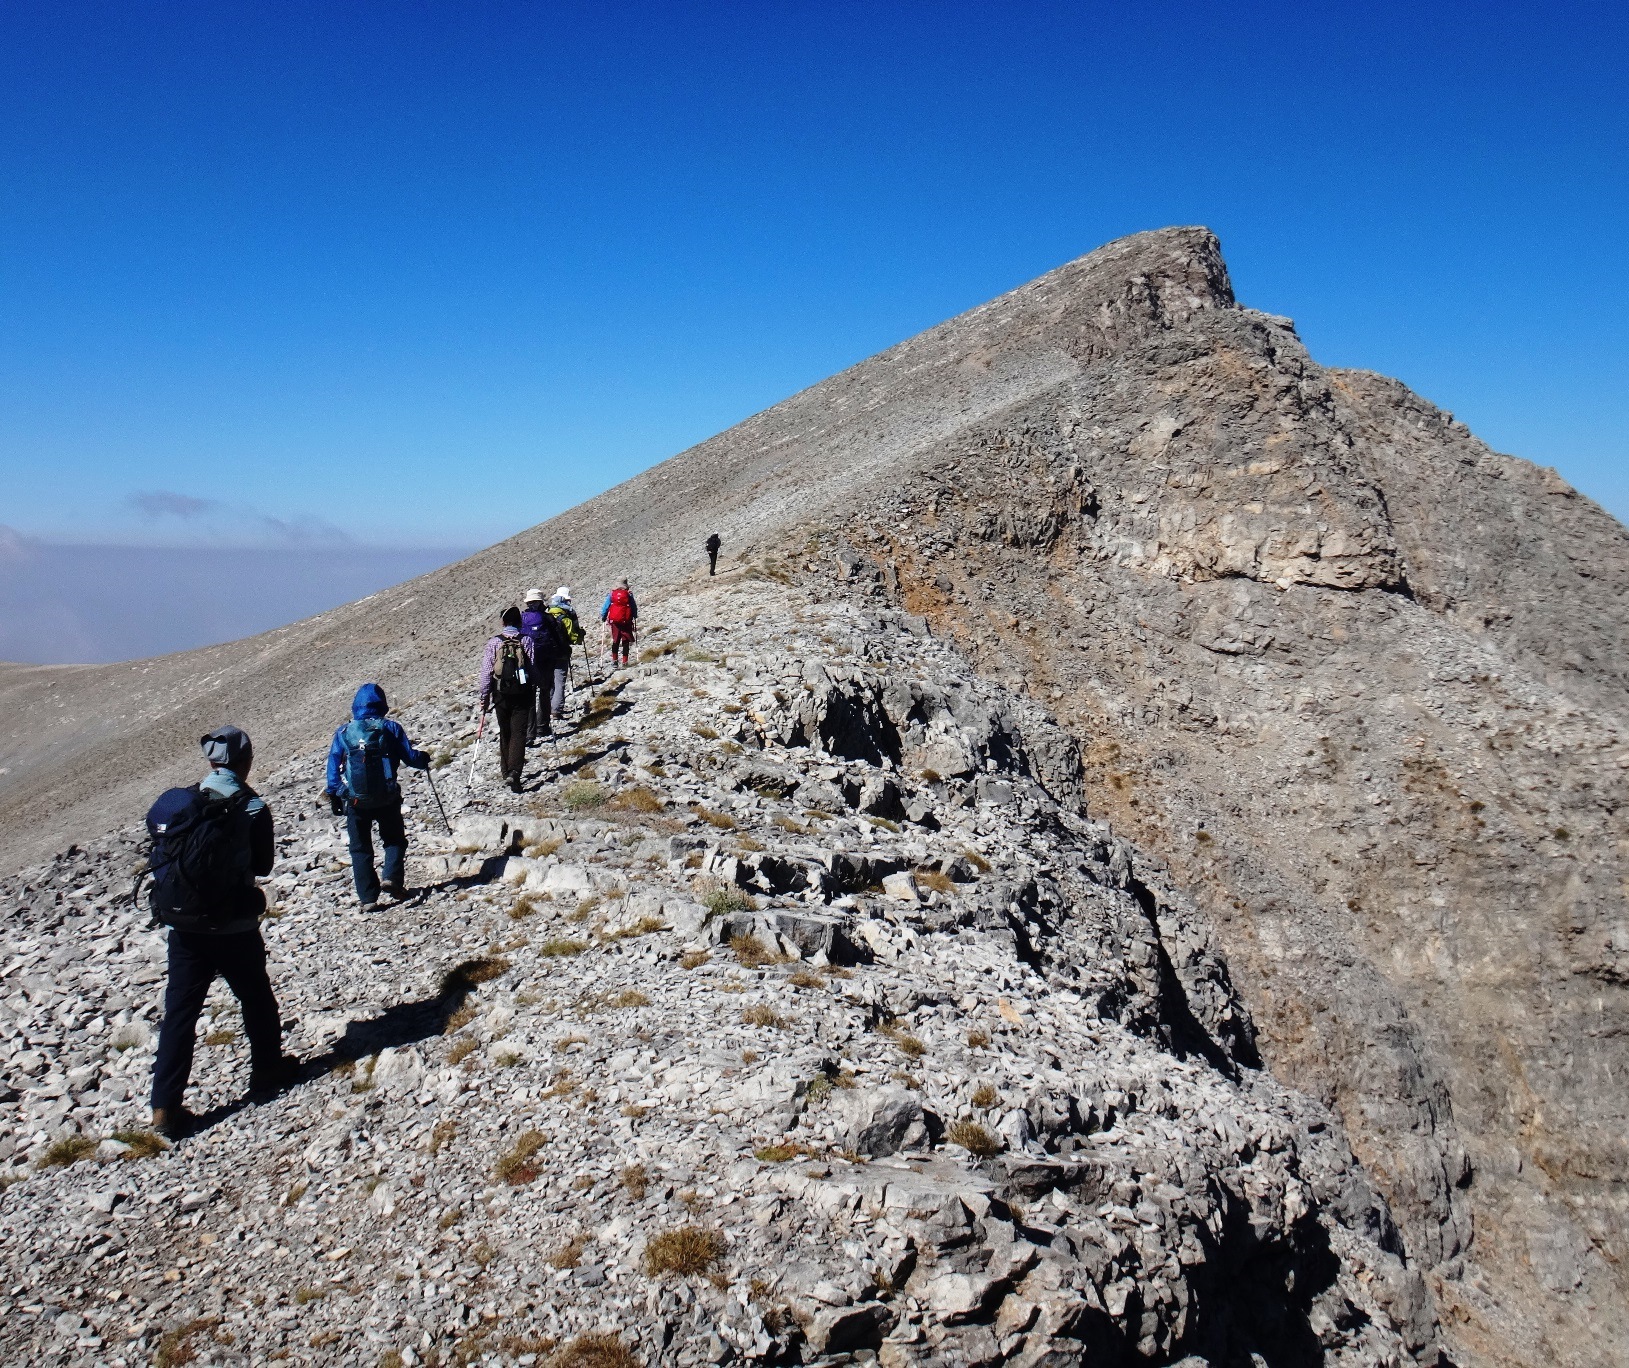 8月19日出発「ギリシャ最高峰オリンポス山登頂と世界遺産メテオラ、エーゲ海クルーズ 10日間」